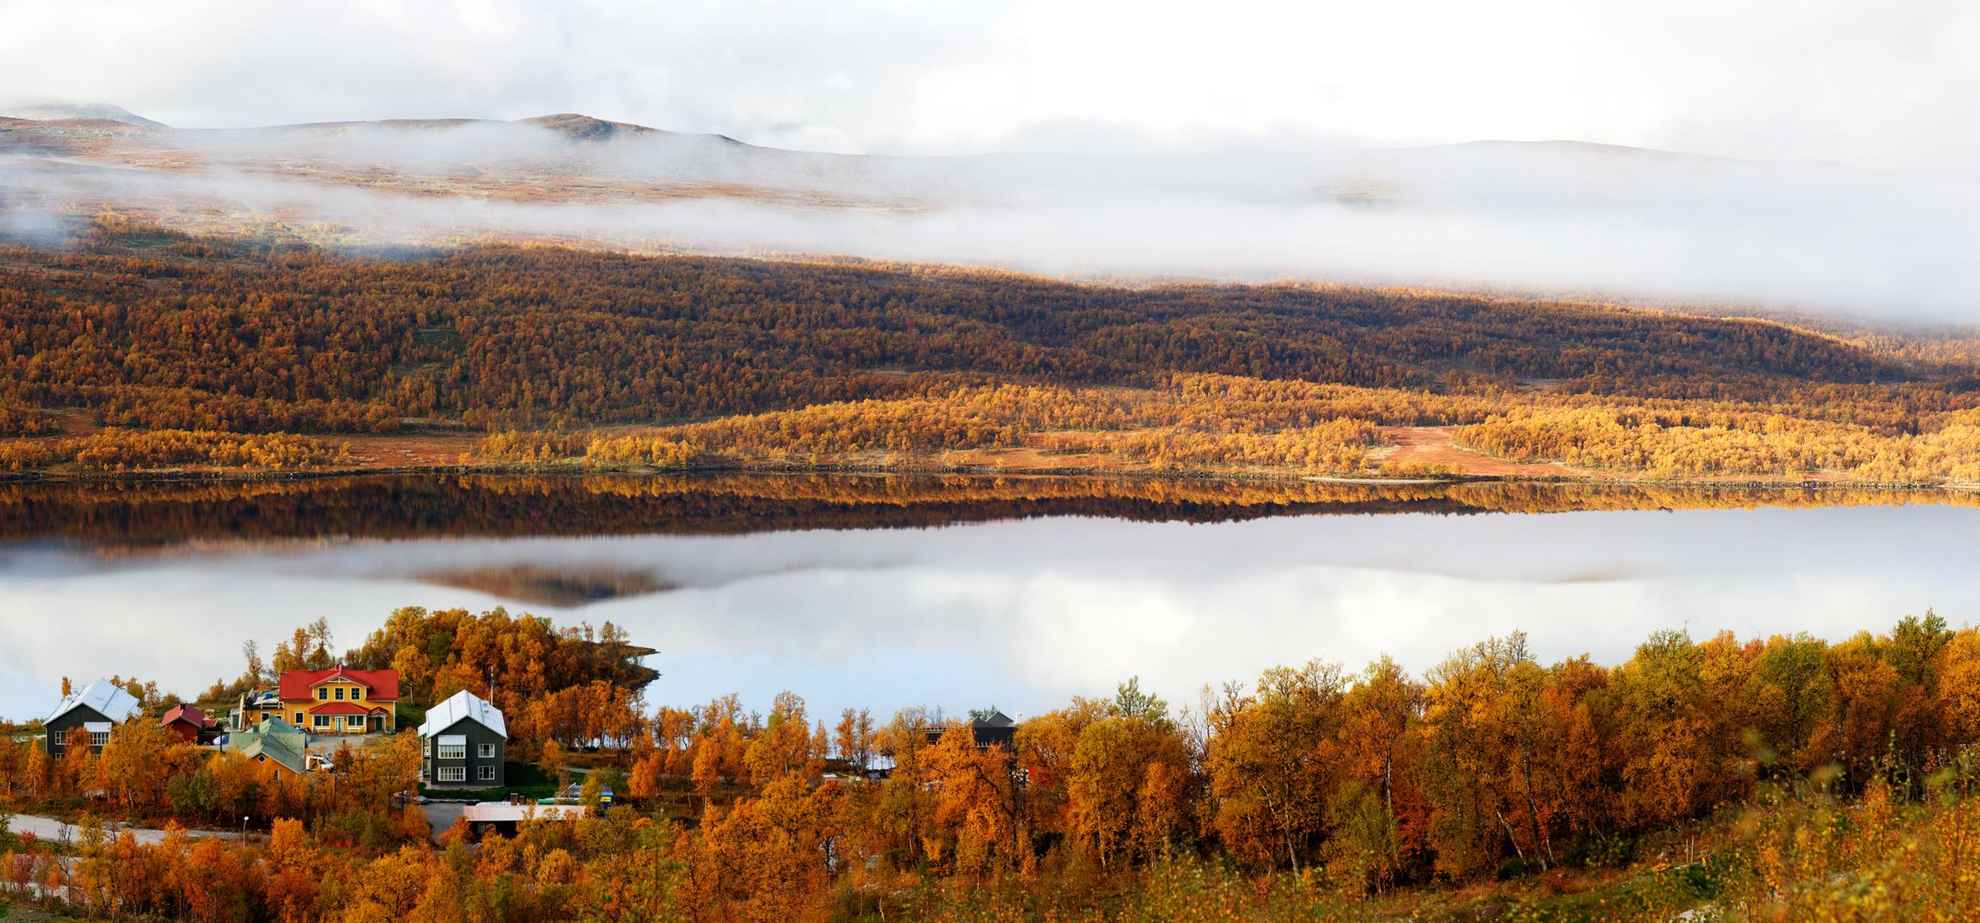 Ein schöner Herbstblick auf ein Hotel an einem See in den Bergen. Die Bäume sind orange.